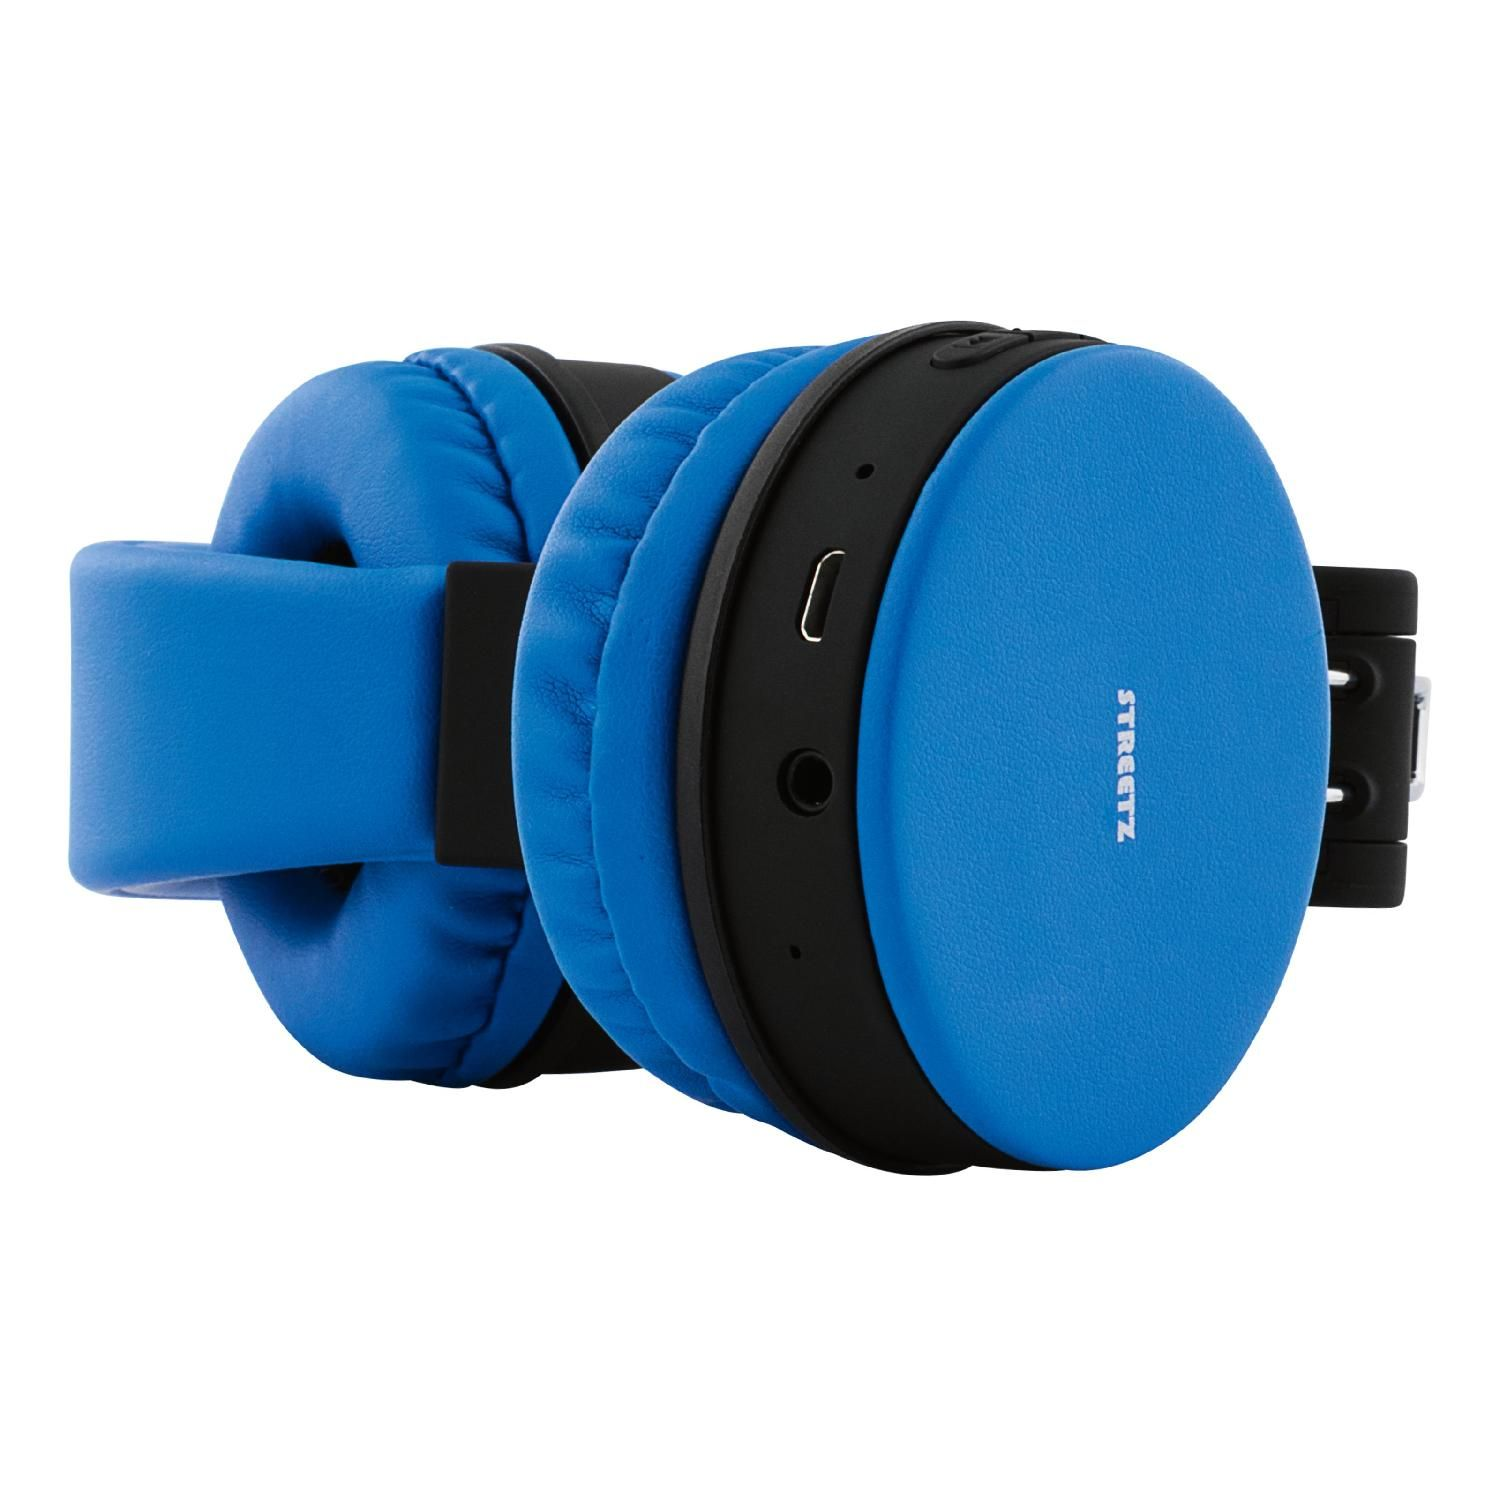 STREETZ Bluetooth Kopfhörer, faltbar, Over-ear blau Kopfhörer